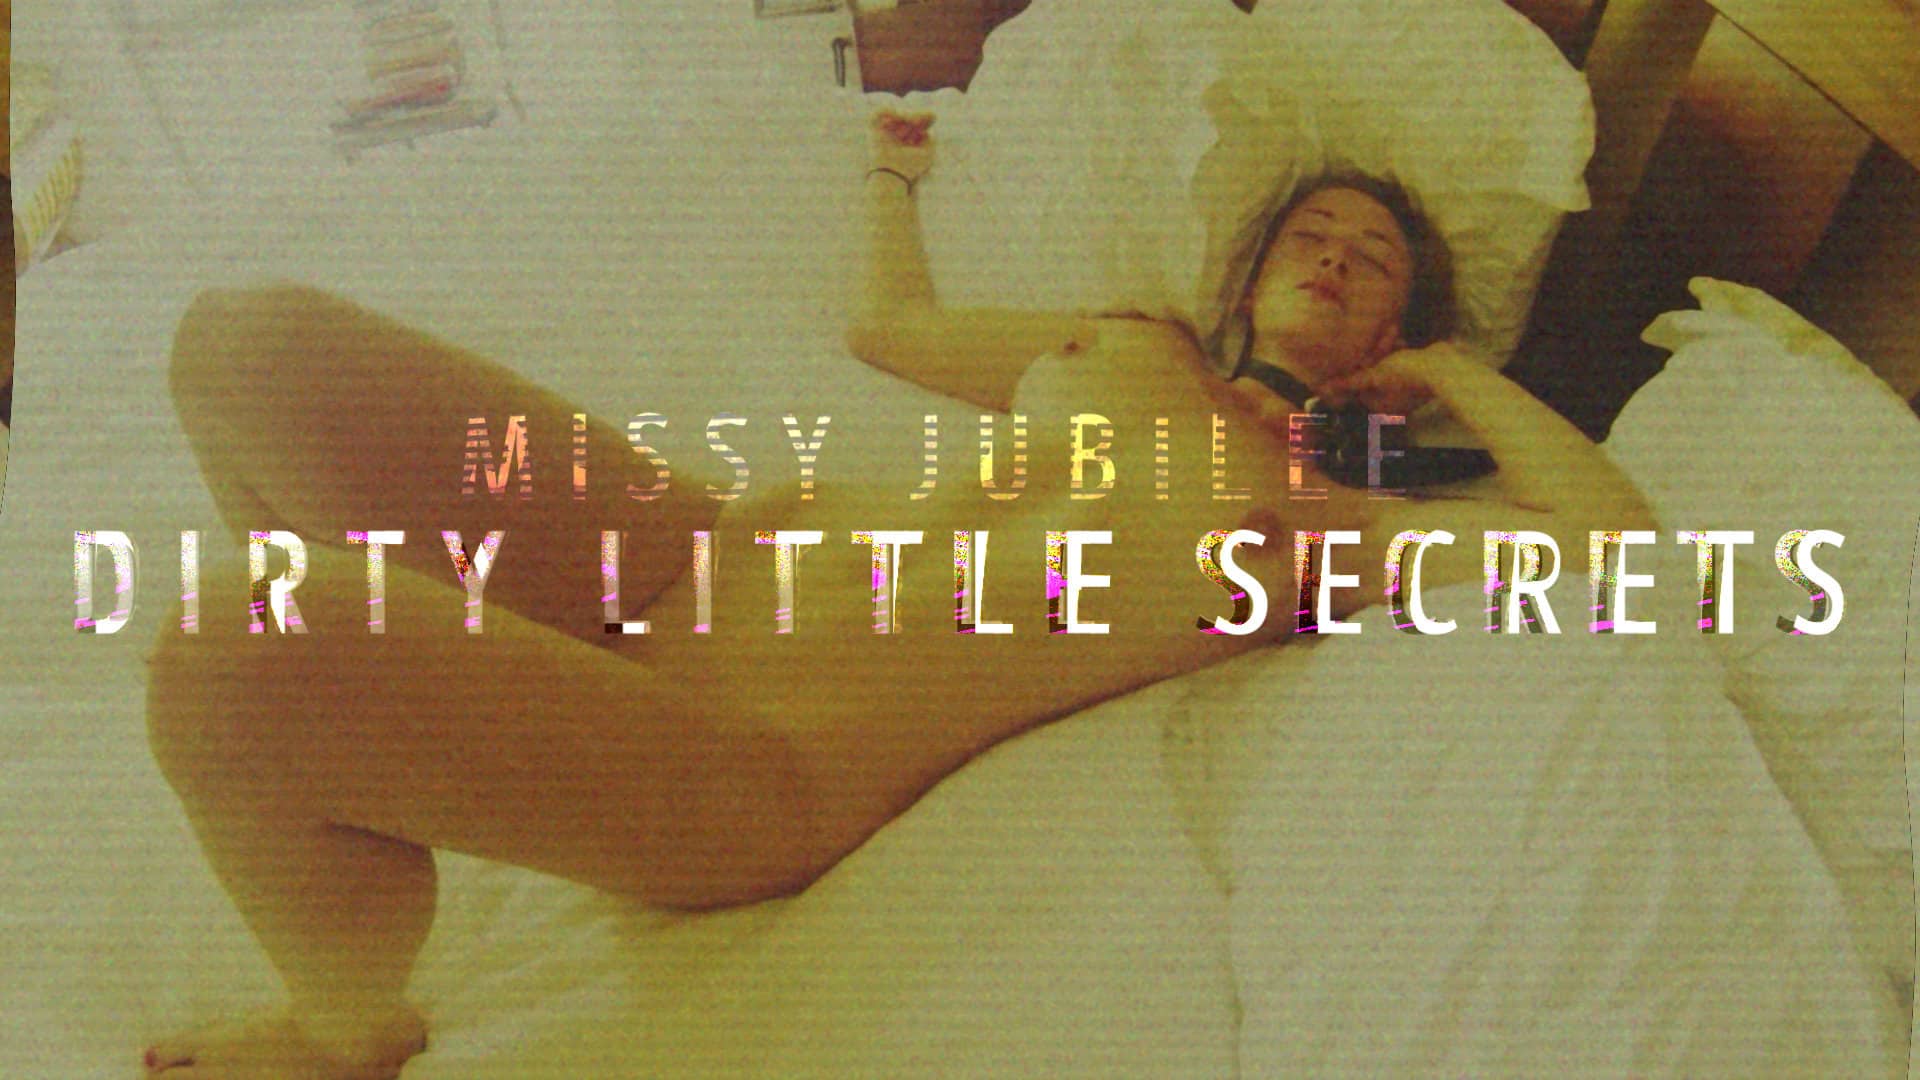 Film Release Poster Missy Jubilee 194 DIRTY LITTLE SECRETS